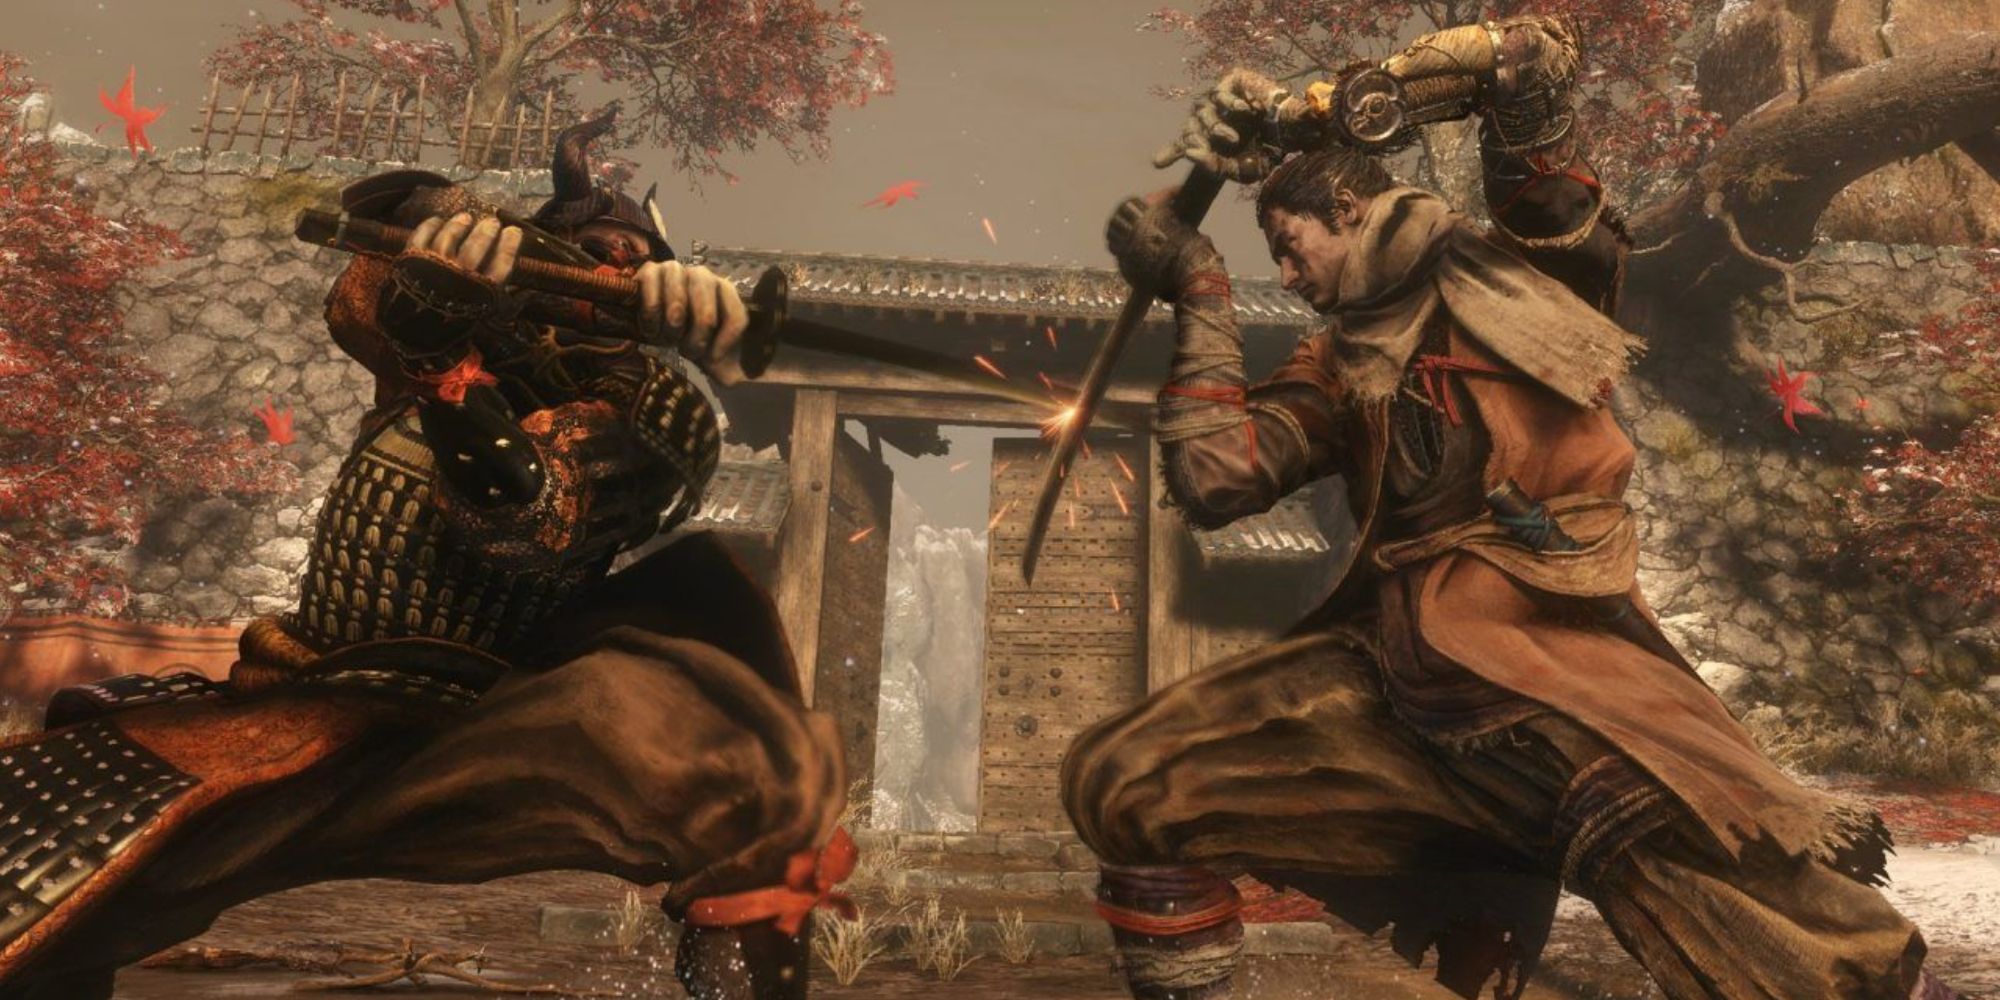 Wolf pariert mit seinem Schwert den Angriff eines Samurai-Feindes in einem Hof, während rote Blätter fallen.